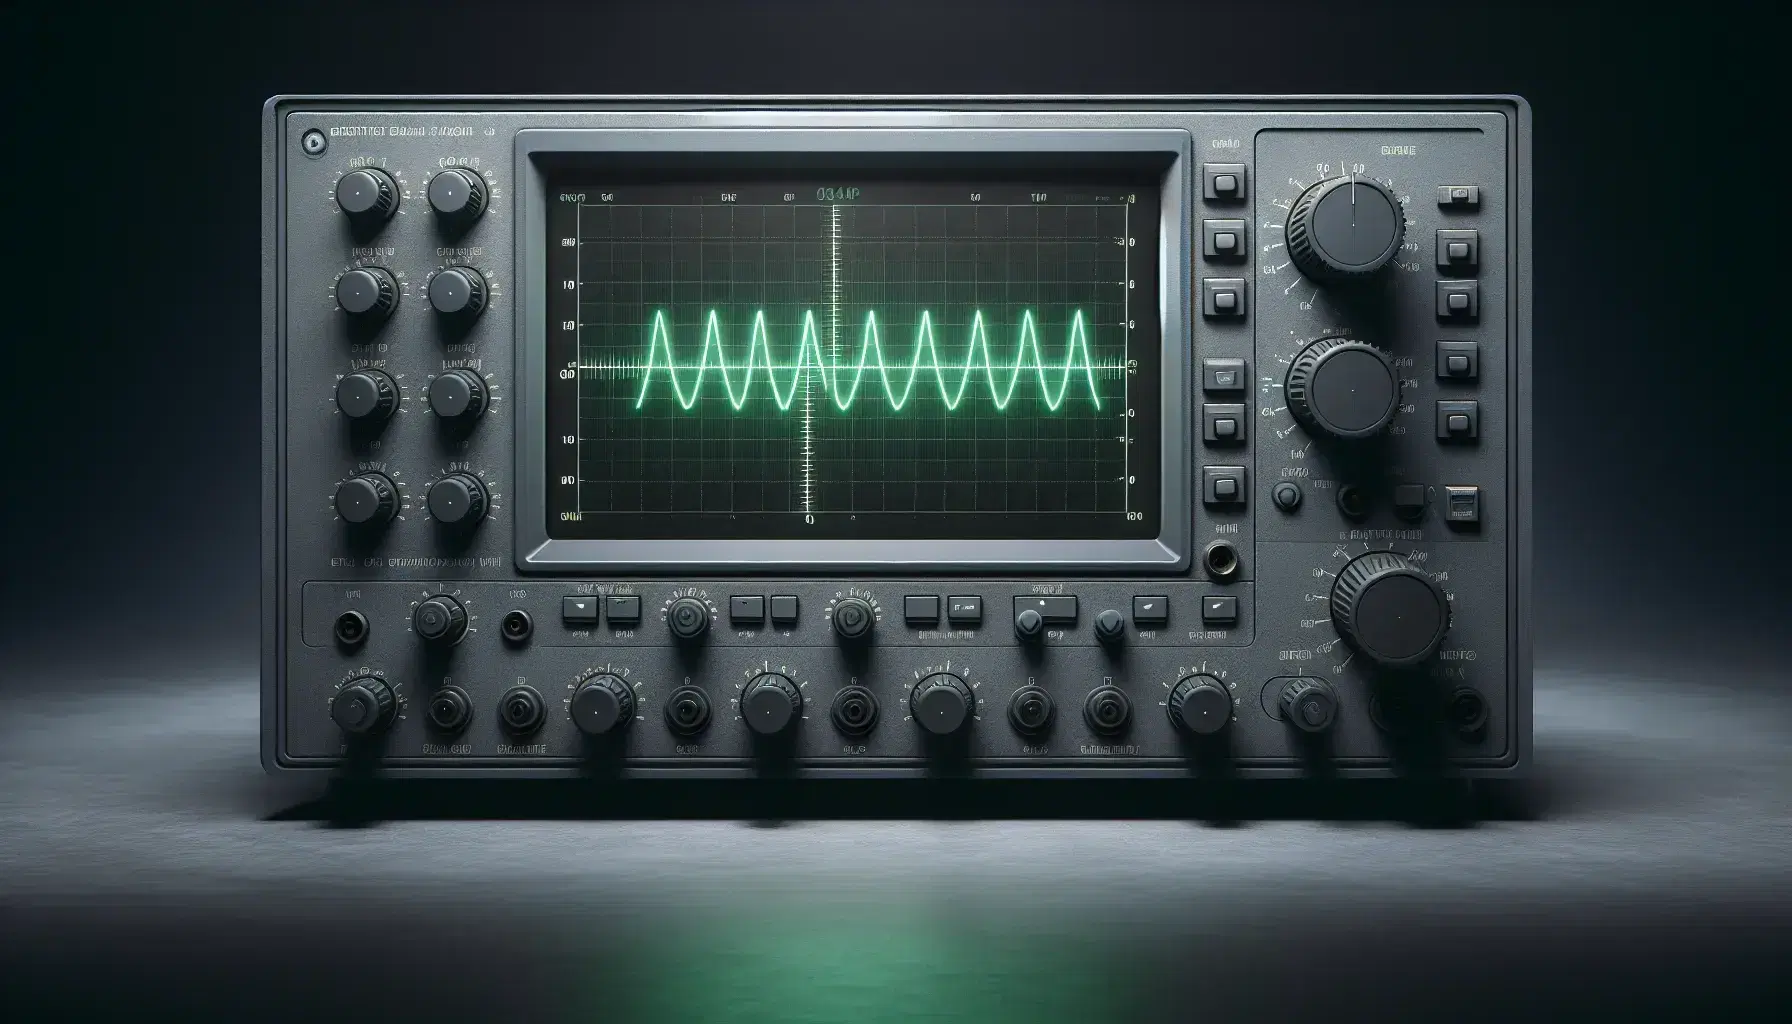 Oscilloscopio moderno con schermo che mostra un segnale sinusoidale verde su sfondo nero, controlli simmetrici in grigio e nero.